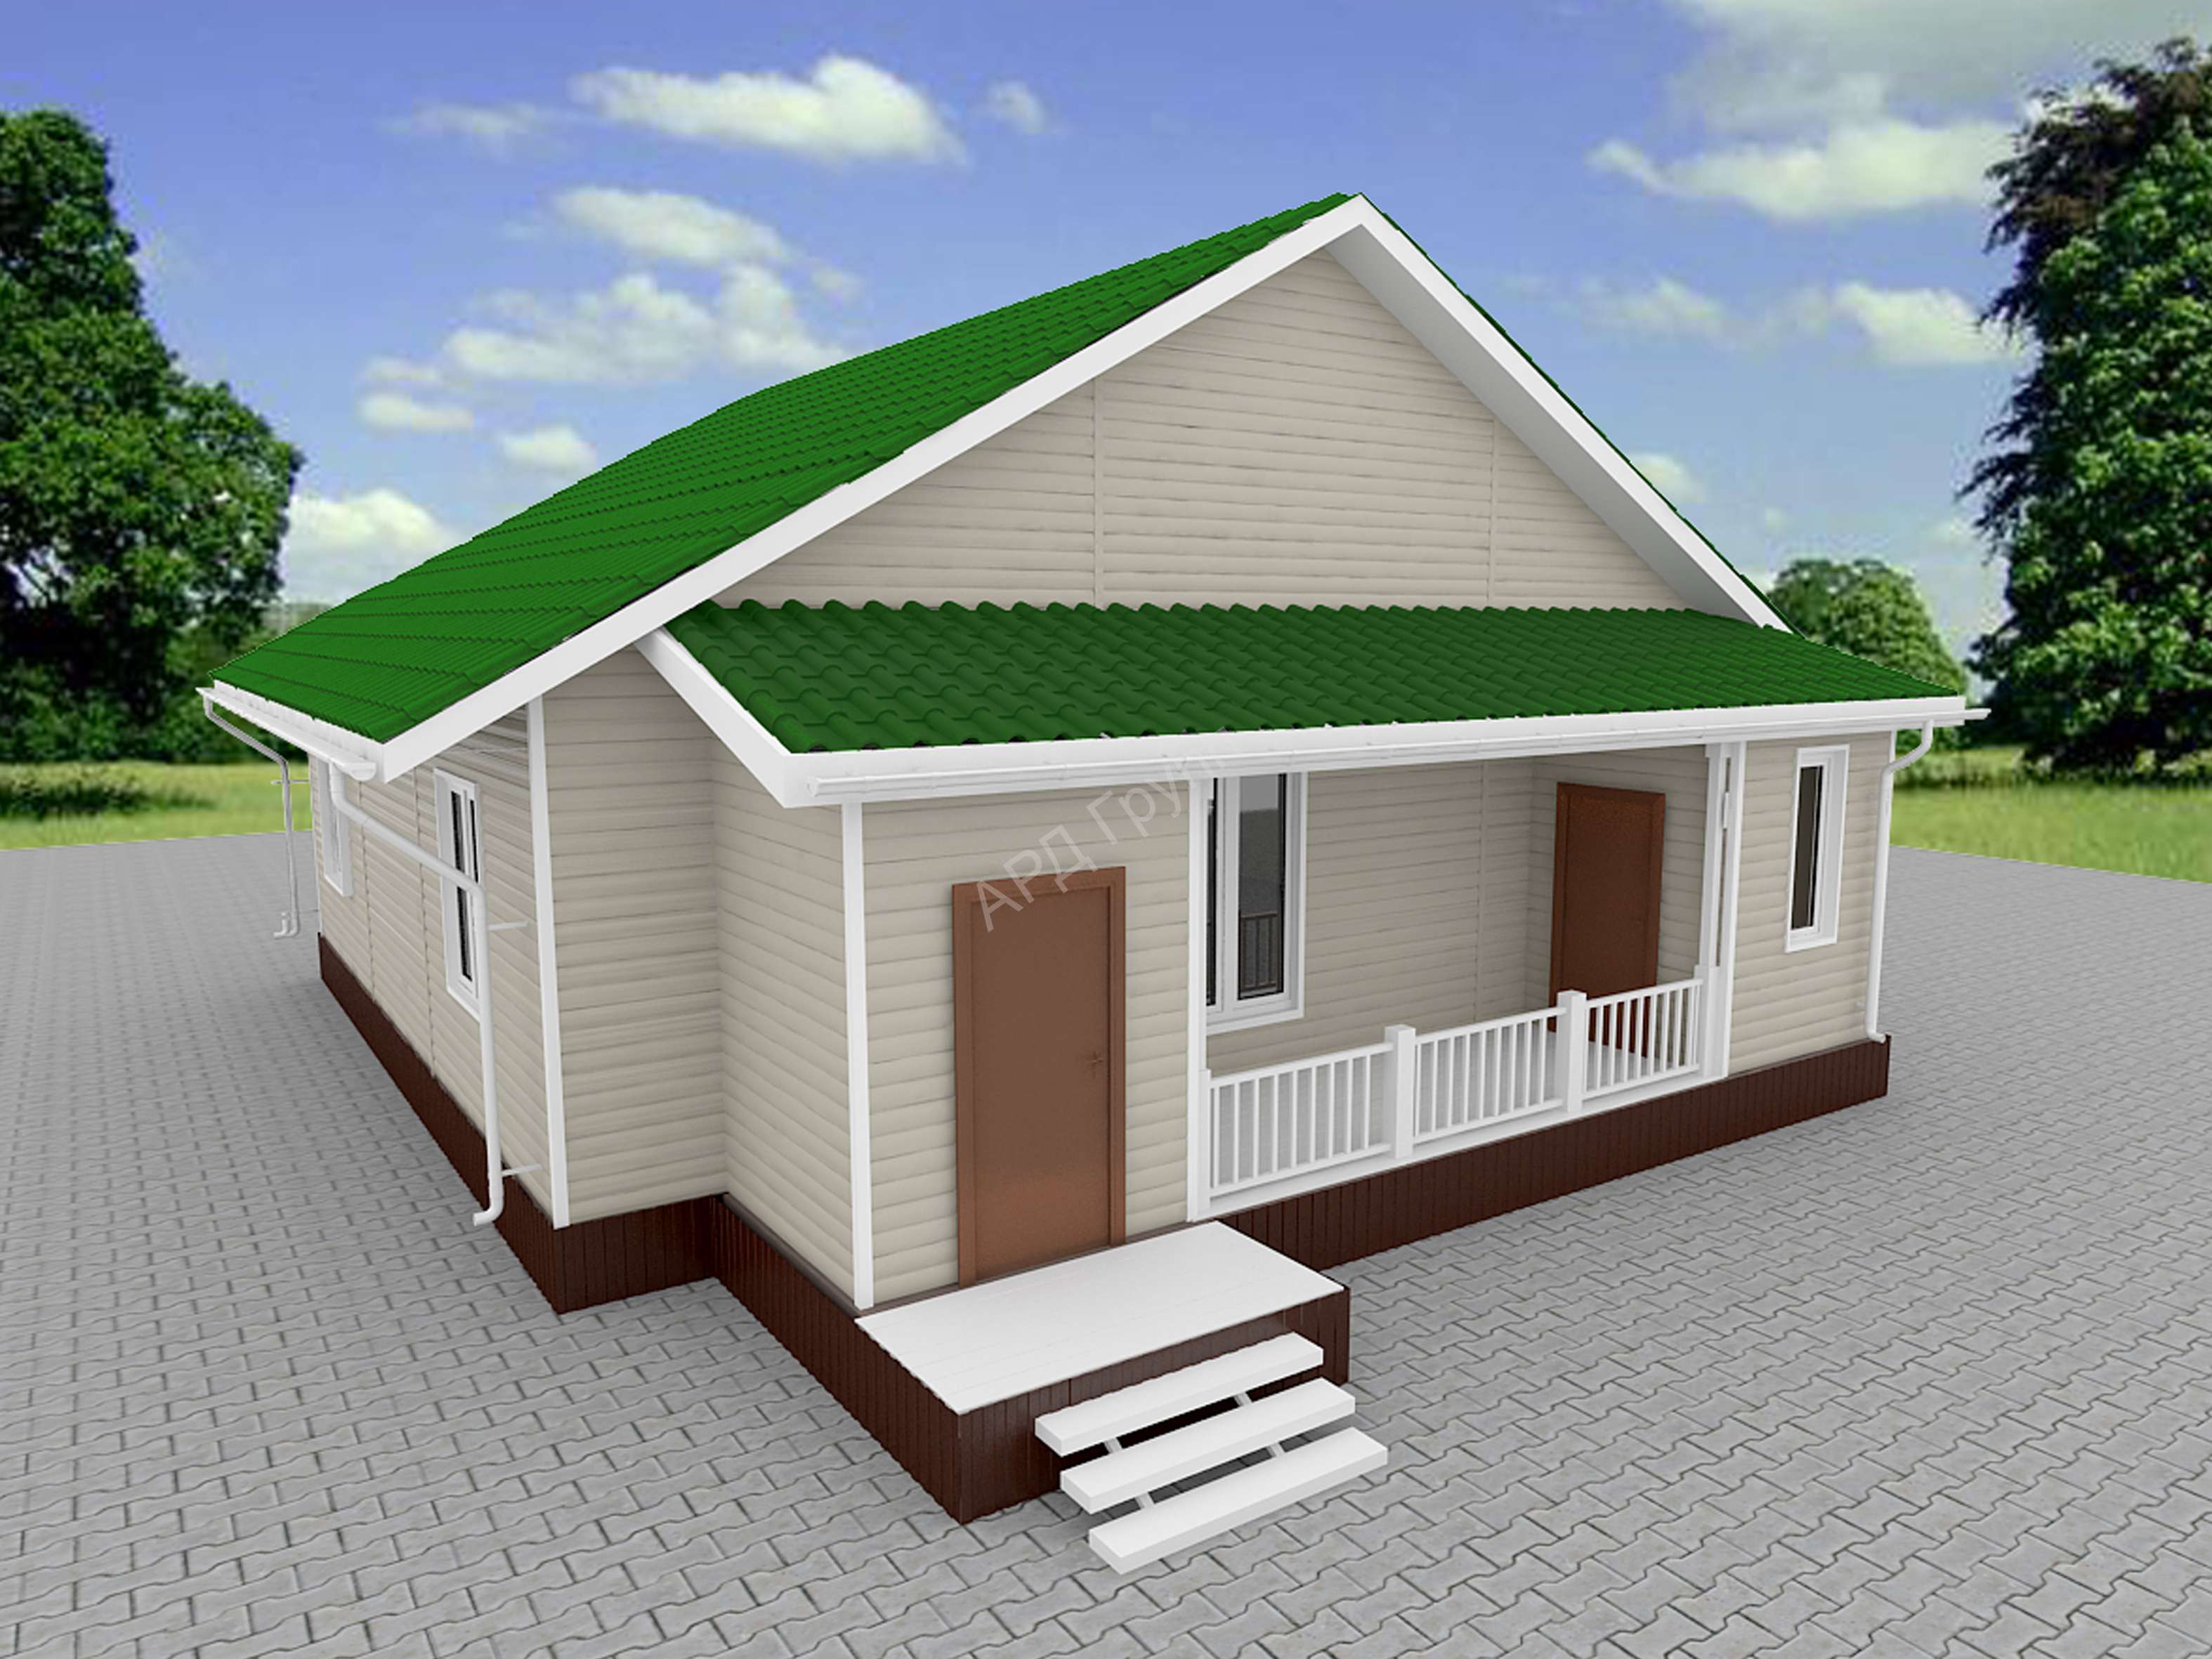 Строительство домов из сип панелей: практические советы для новичков и профессионалов